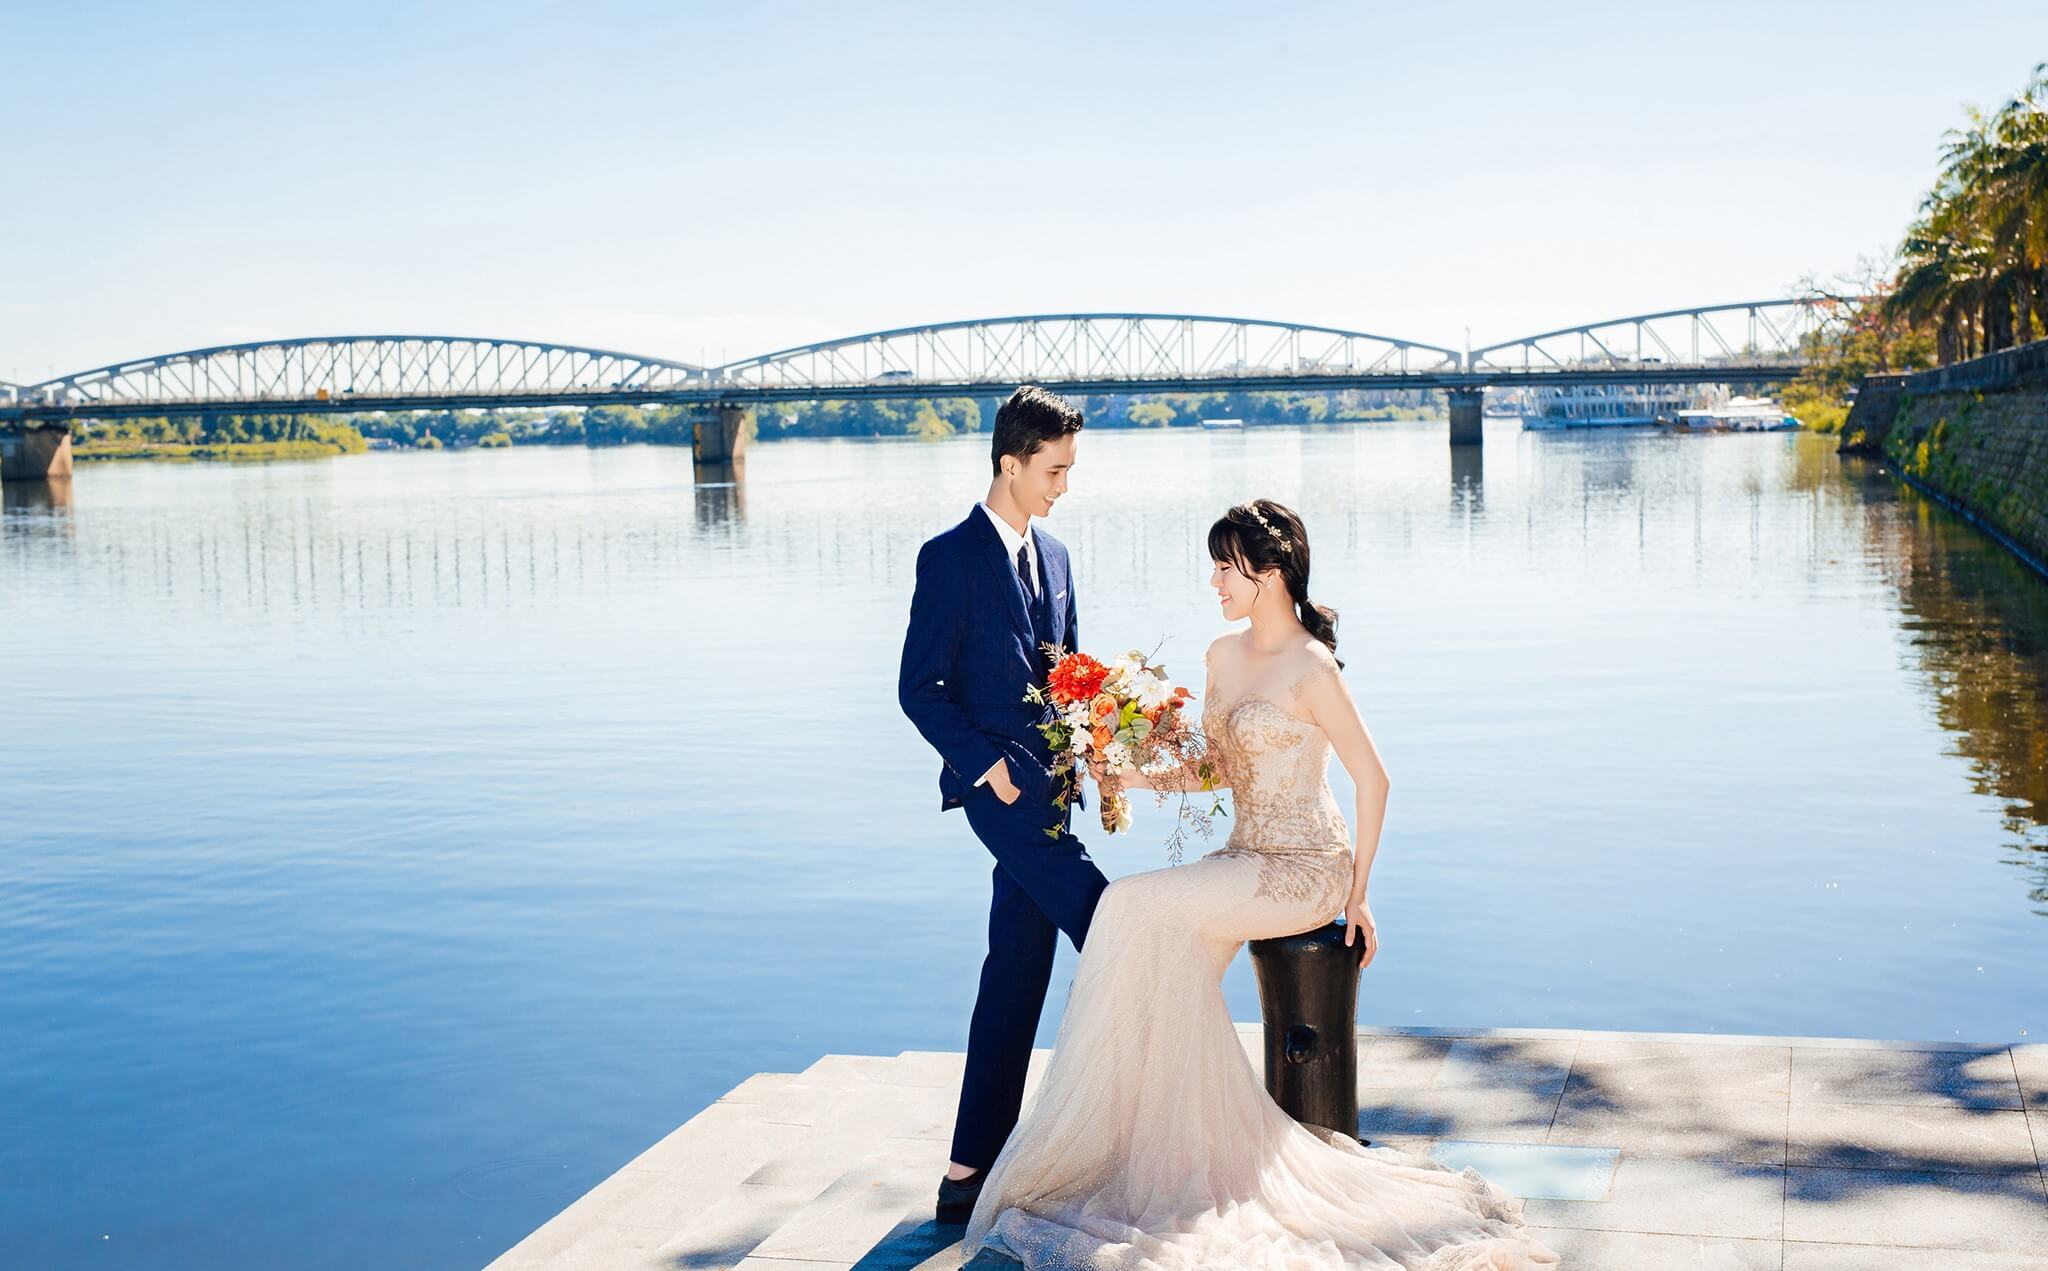 Sông Hương là nơi được nhiều cặp đôi lựa chọn để lưu giữ những khoảnh khắc quan trọng trong đời (Ảnh: sưu tầm)